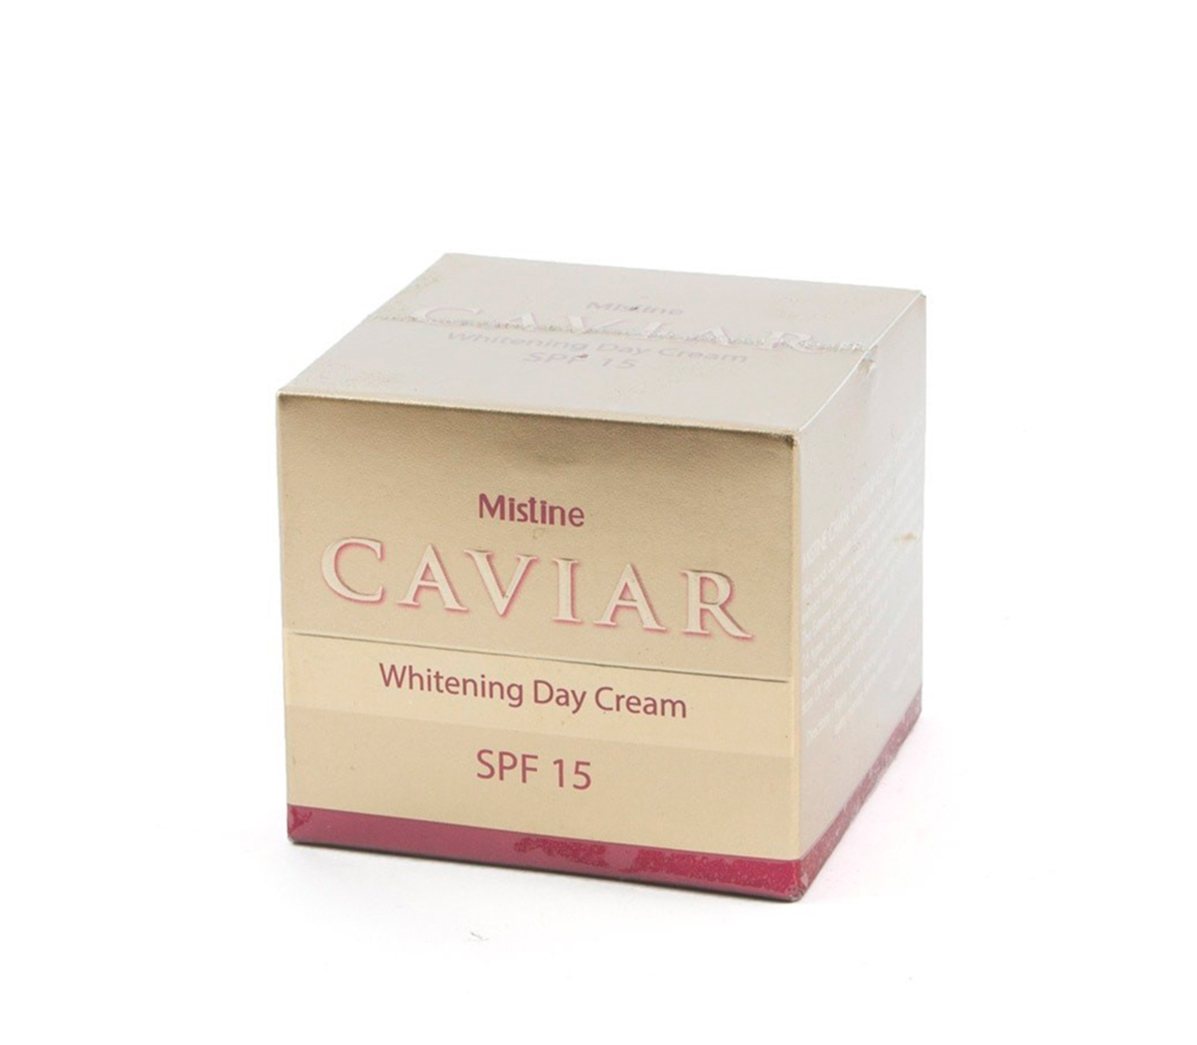 CAVIAR Whitening Day Cream SPF 15, Mistine (ИКРА отбеливающий дневной крем с защитой от солнца, Мистин), 30 г.